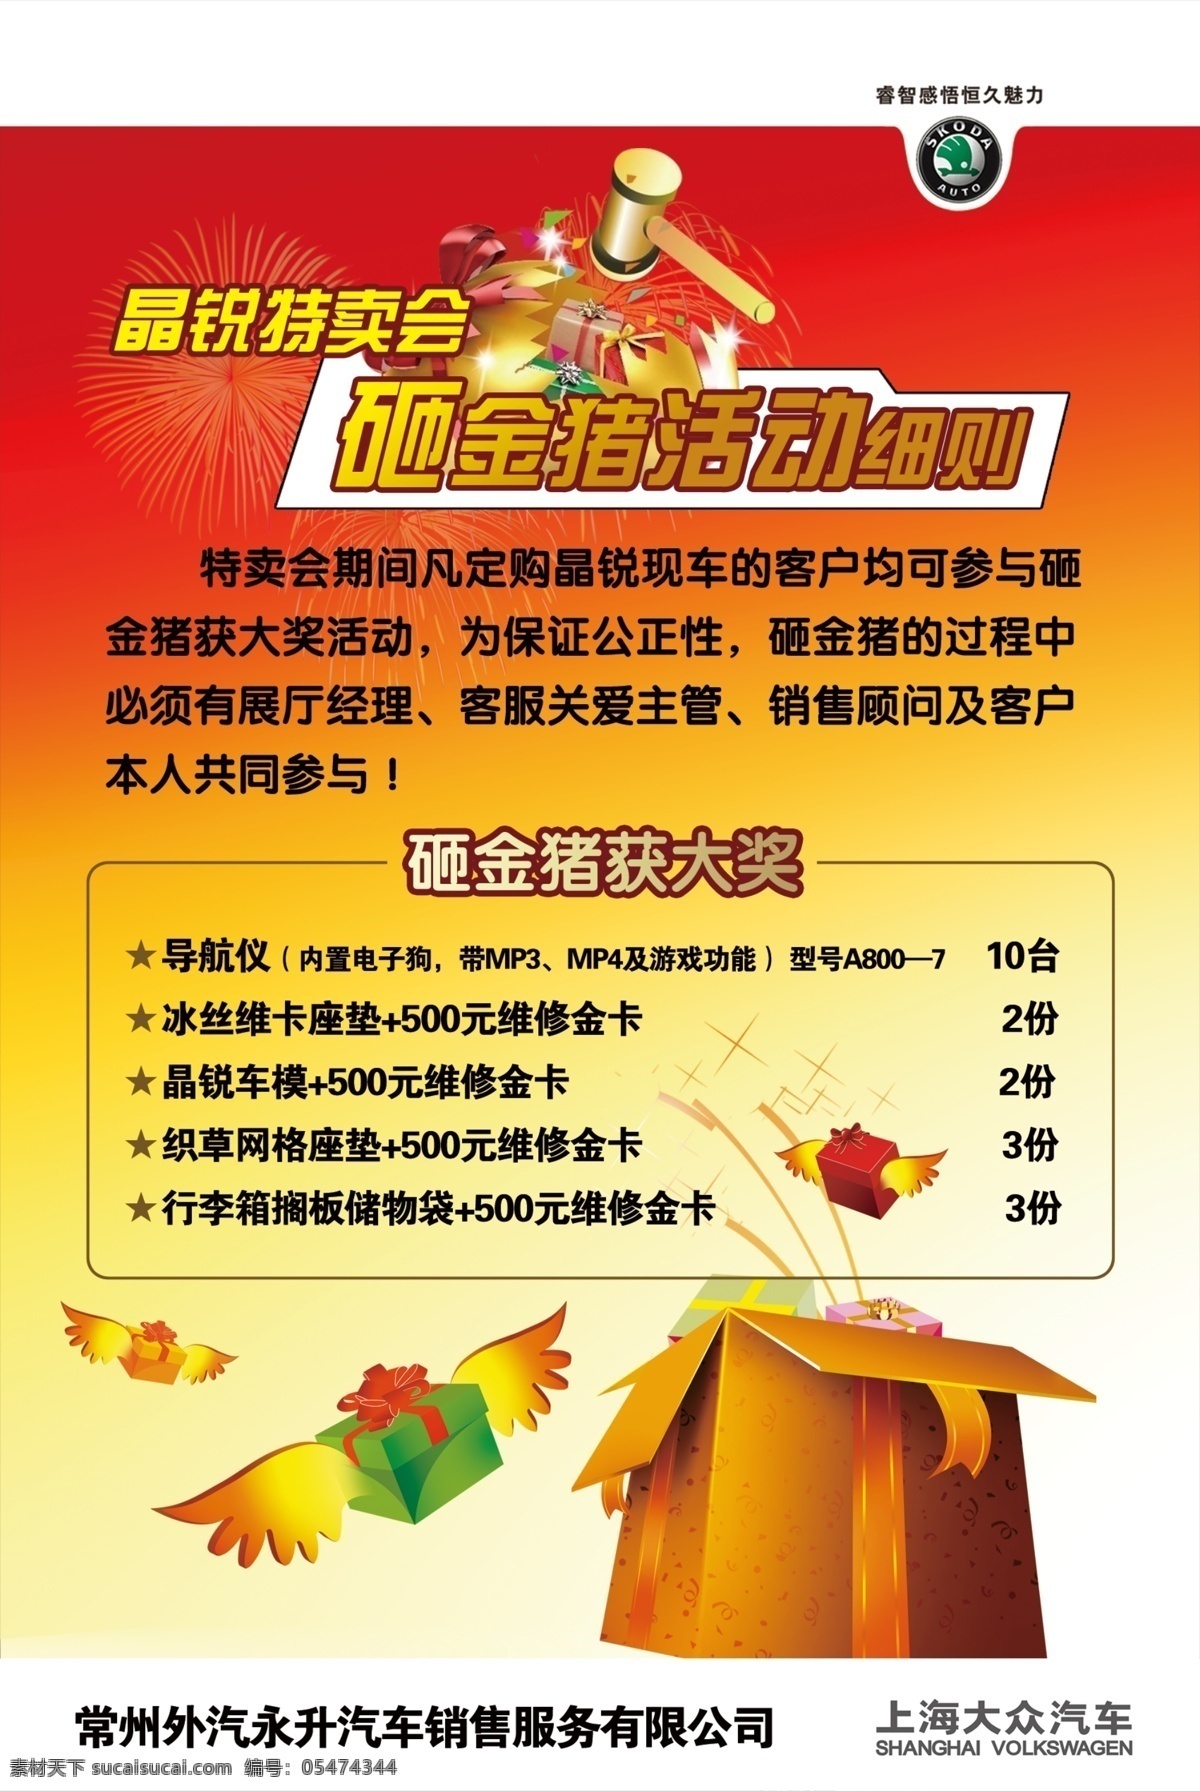 上海大众 活动 海报 砸金猪 砸金蛋 斯柯达 礼盒 活动海报 广告设计模板 源文件